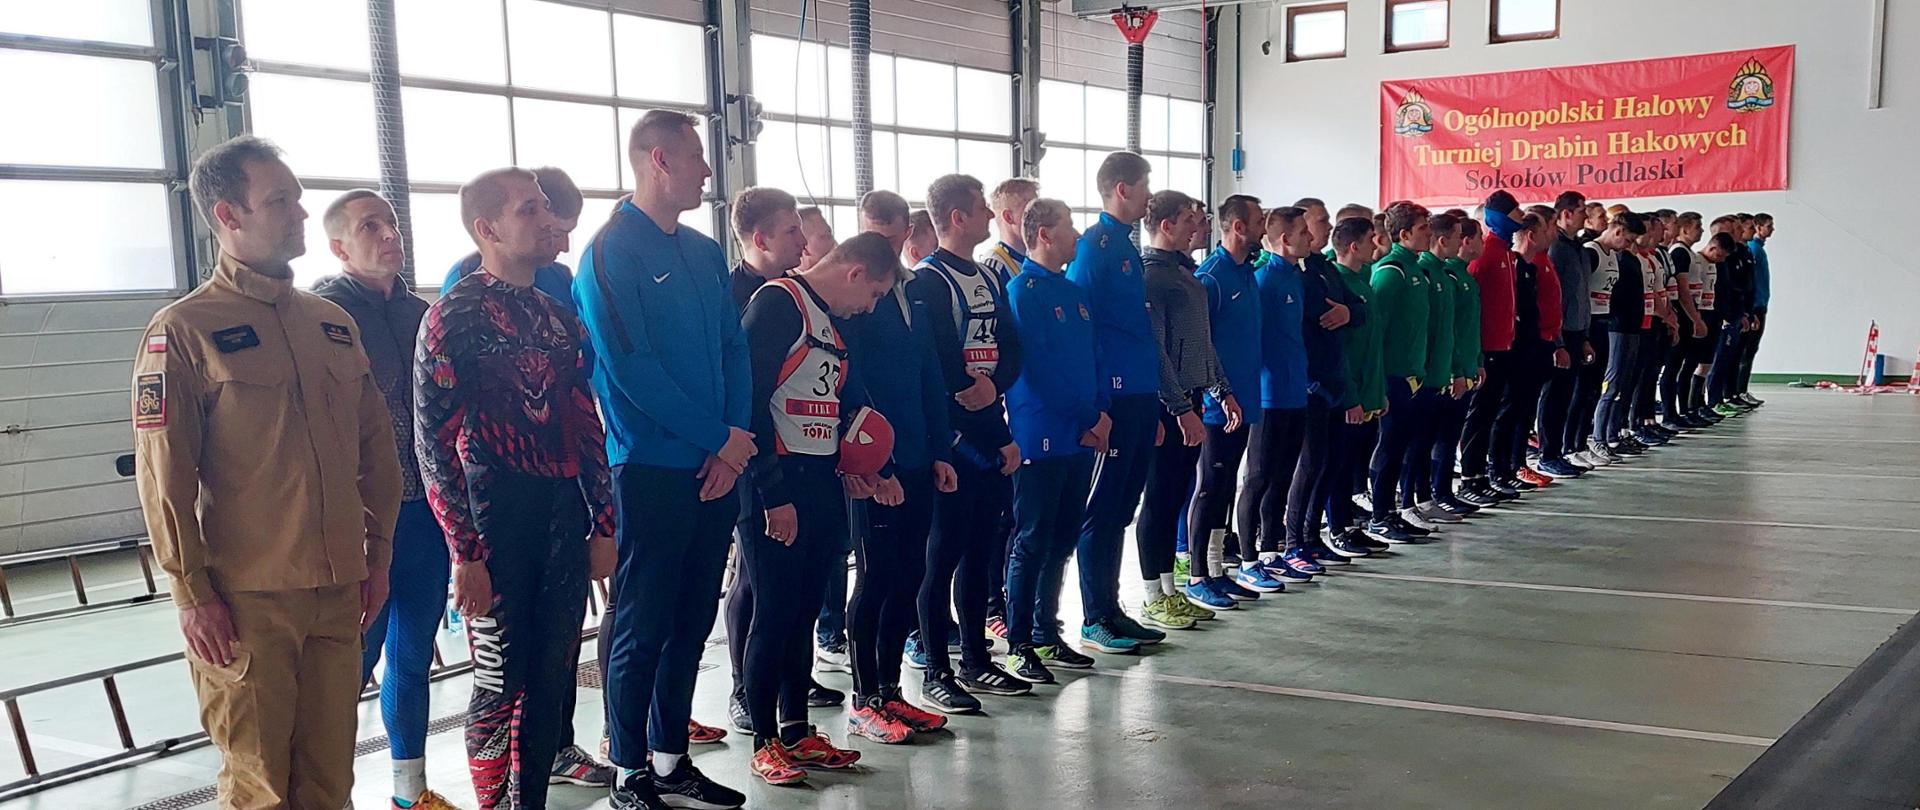 Zawodnicy stoją w dwurzędzie na sali gimnastycznej, na ścianie widnieje napis Ogólnopolski Halowy Turniej drabin Hakowych